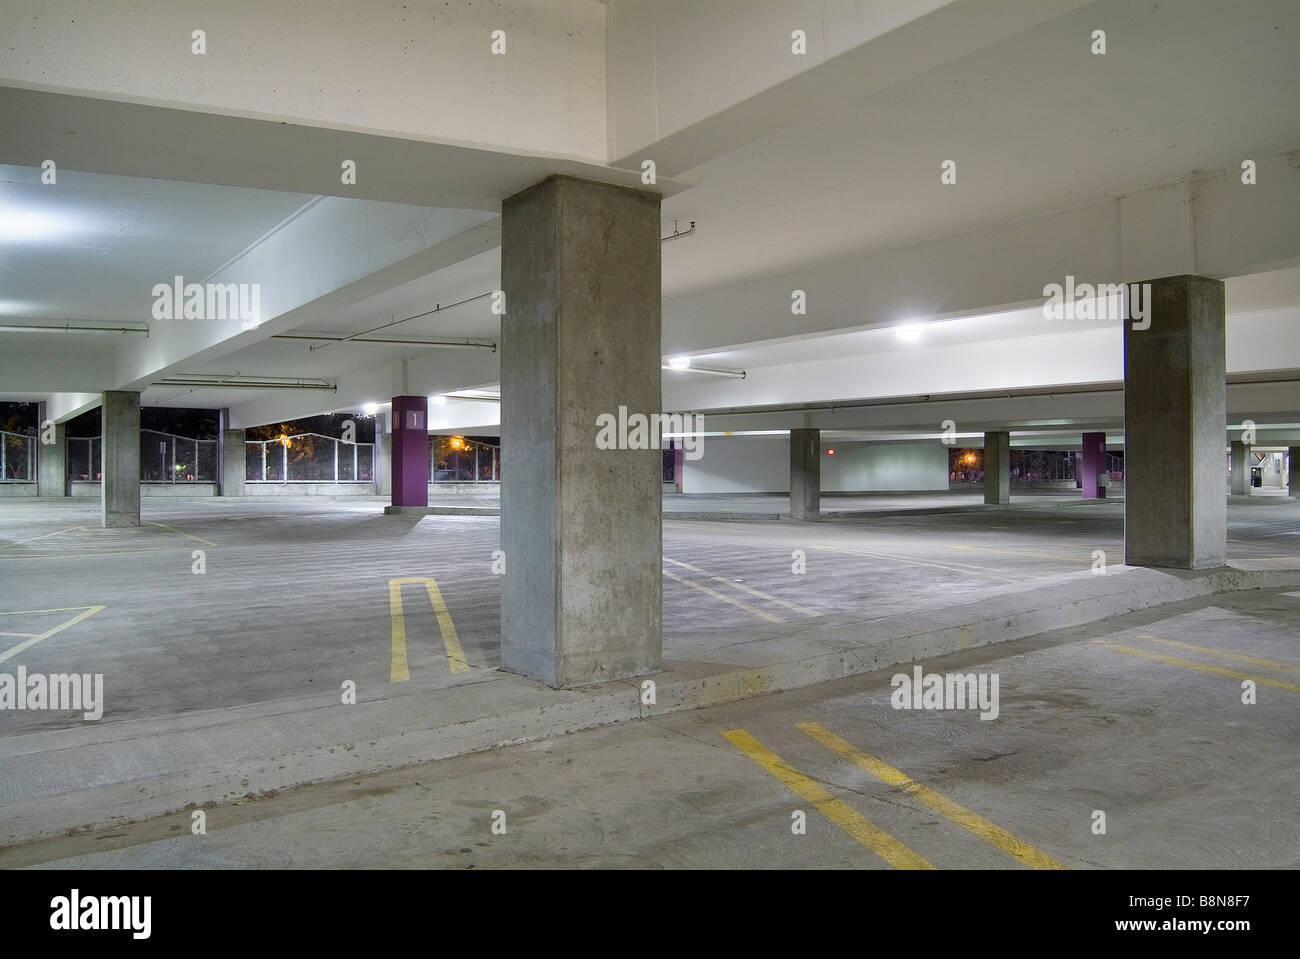 Large Parking Garage, Chicago, United States Stock Photo - Alamy